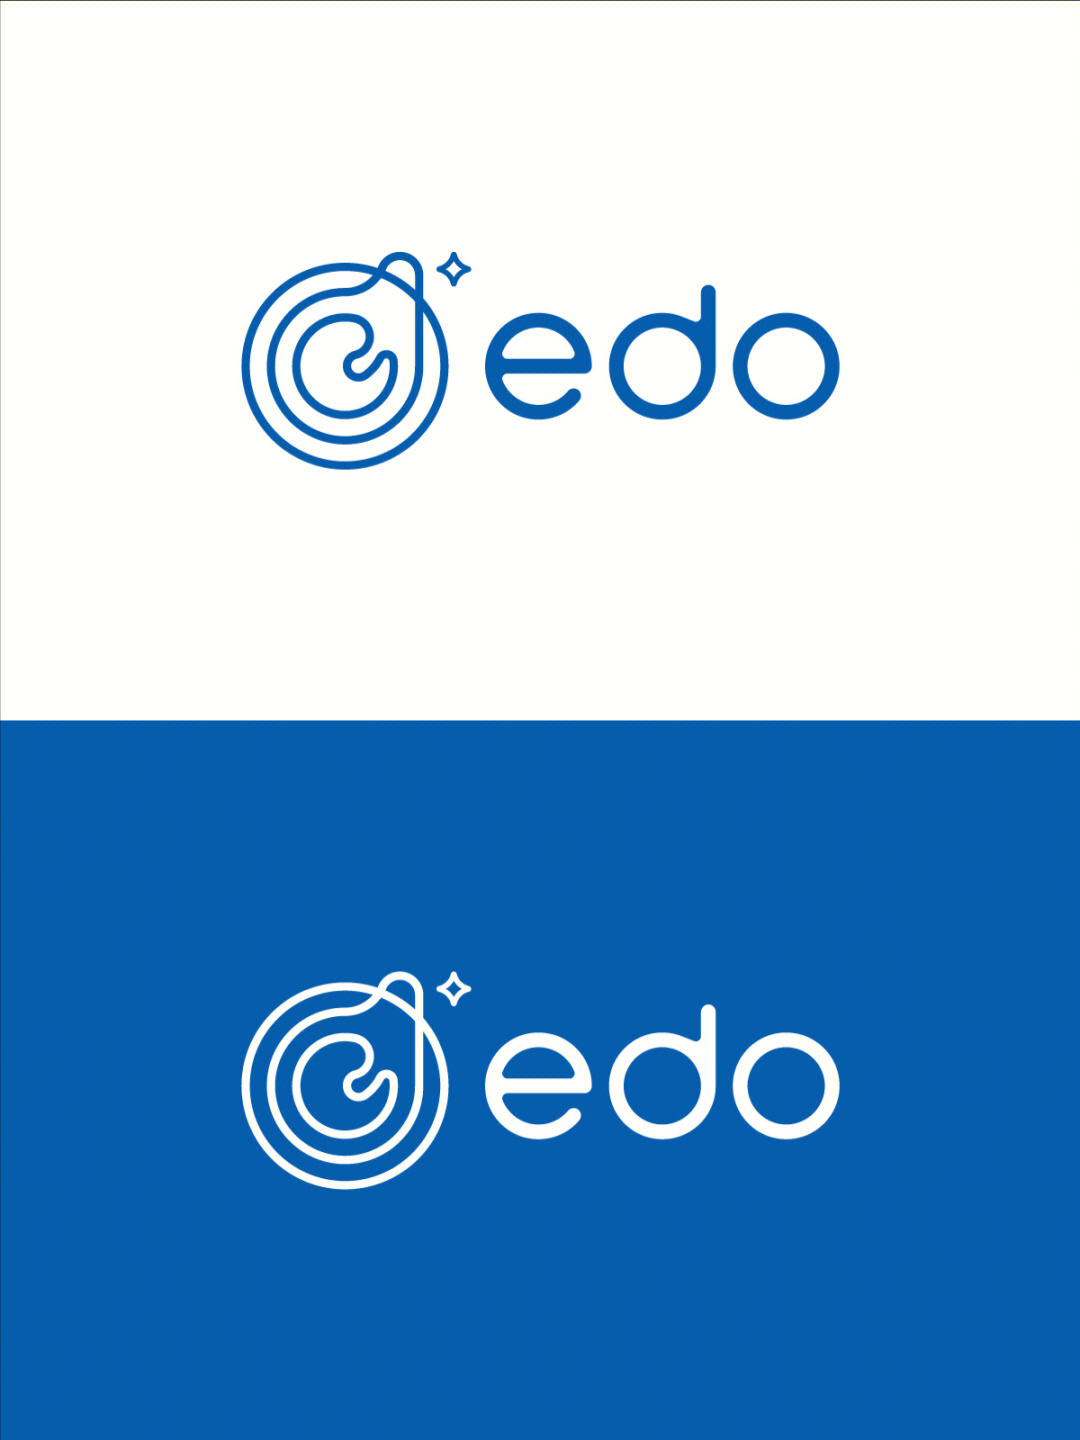 原创生物科技企业品牌logo设计简约蓝色系